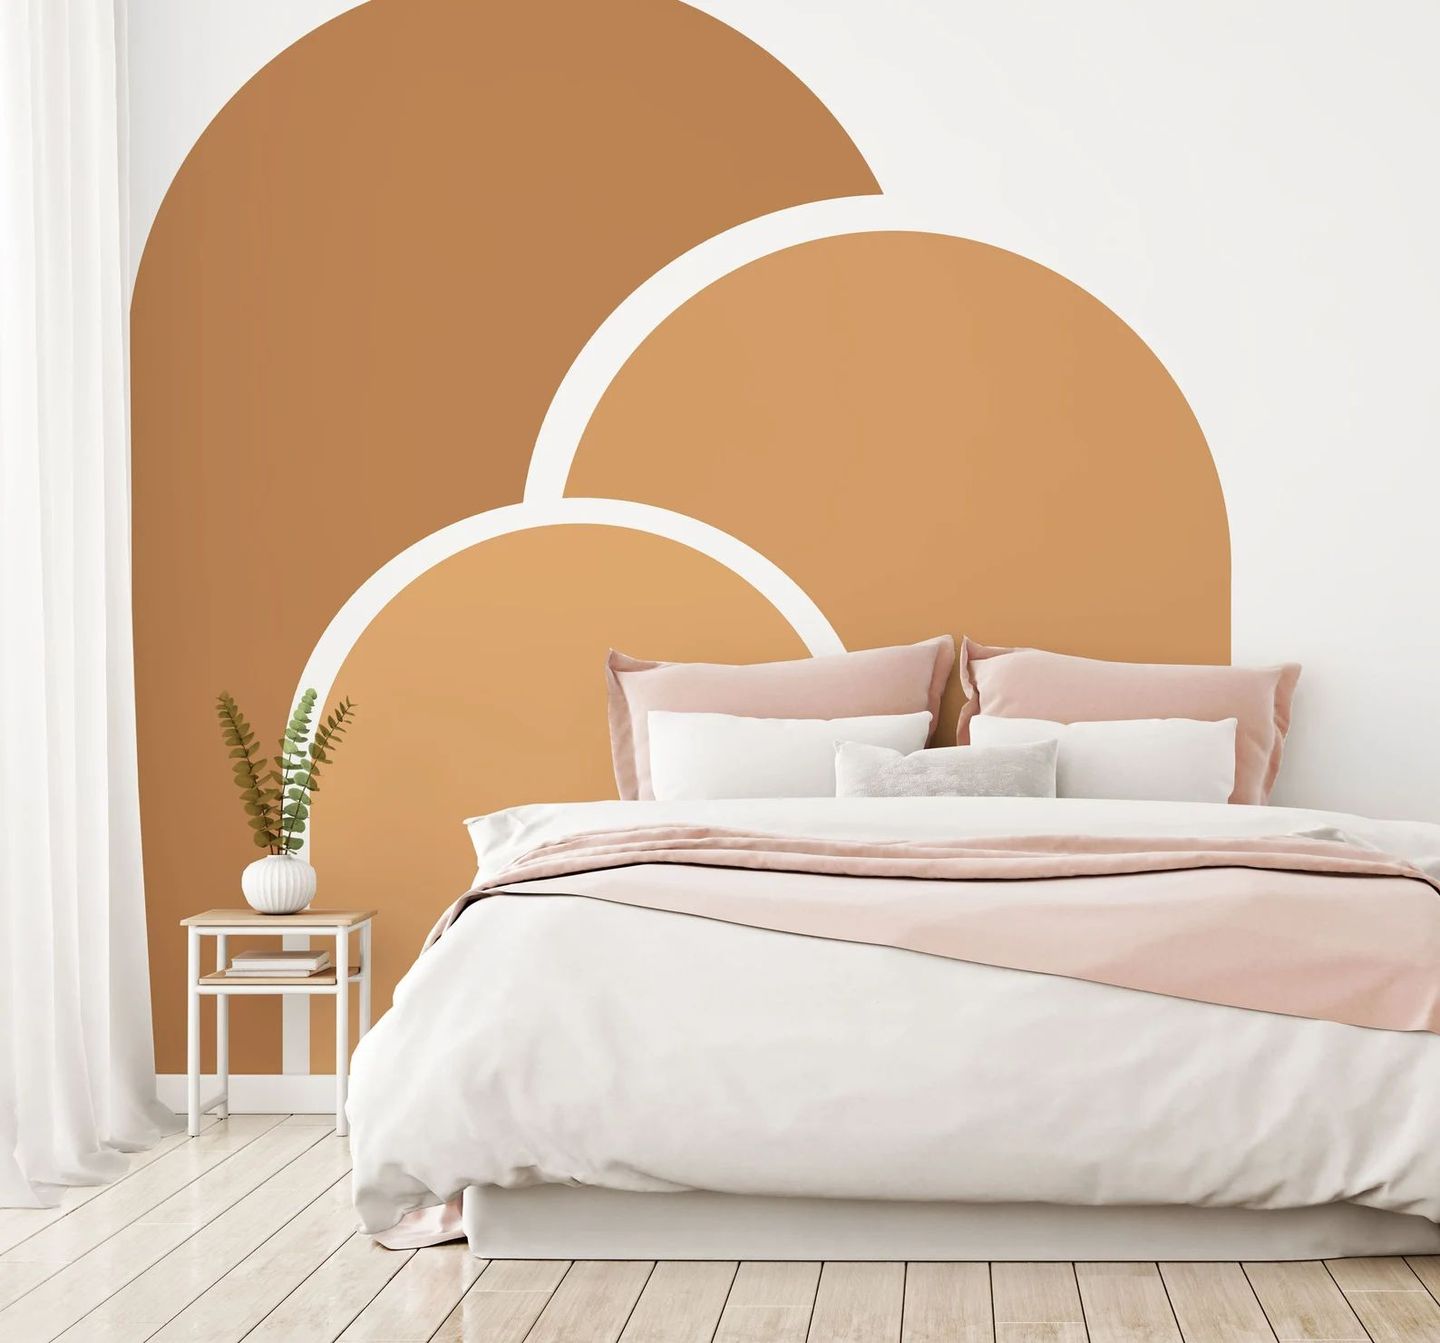 Wallpaper dengan warna soft cocok dipasang pada dinding kamar tidur remaja perempuan.